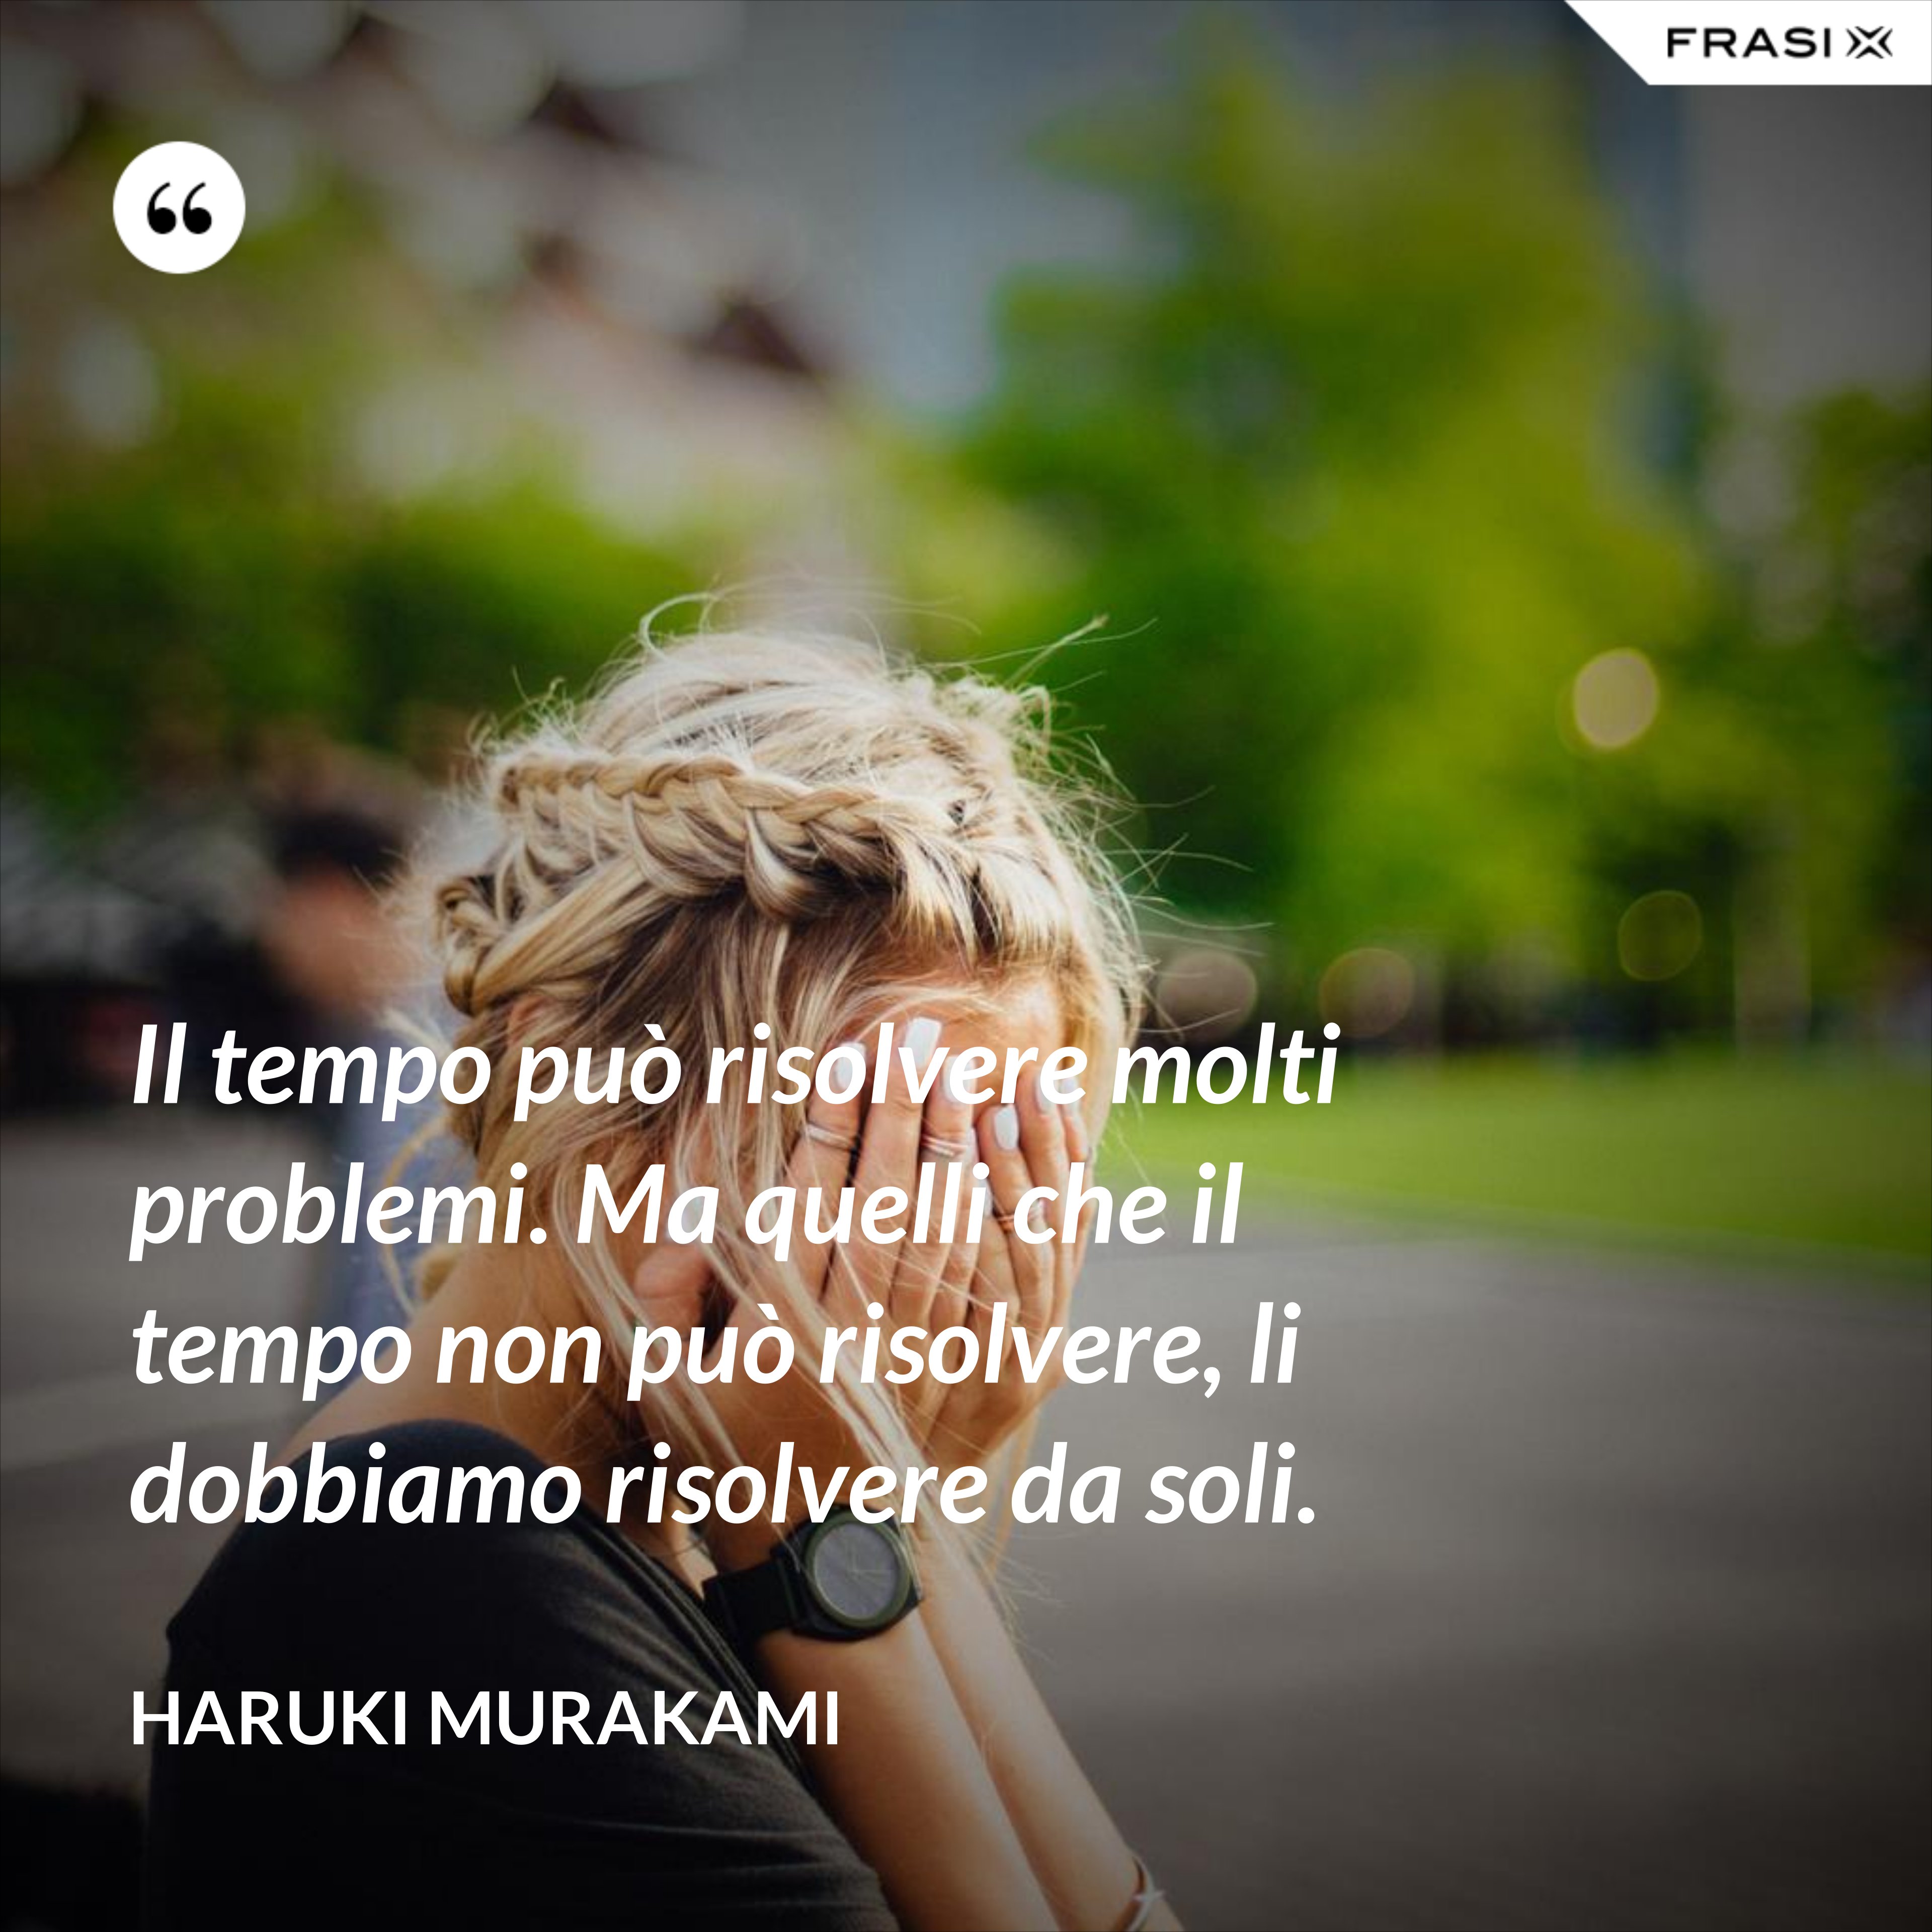 Il tempo può risolvere molti problemi. Ma quelli che il tempo non può risolvere, li dobbiamo risolvere da soli. - Haruki Murakami